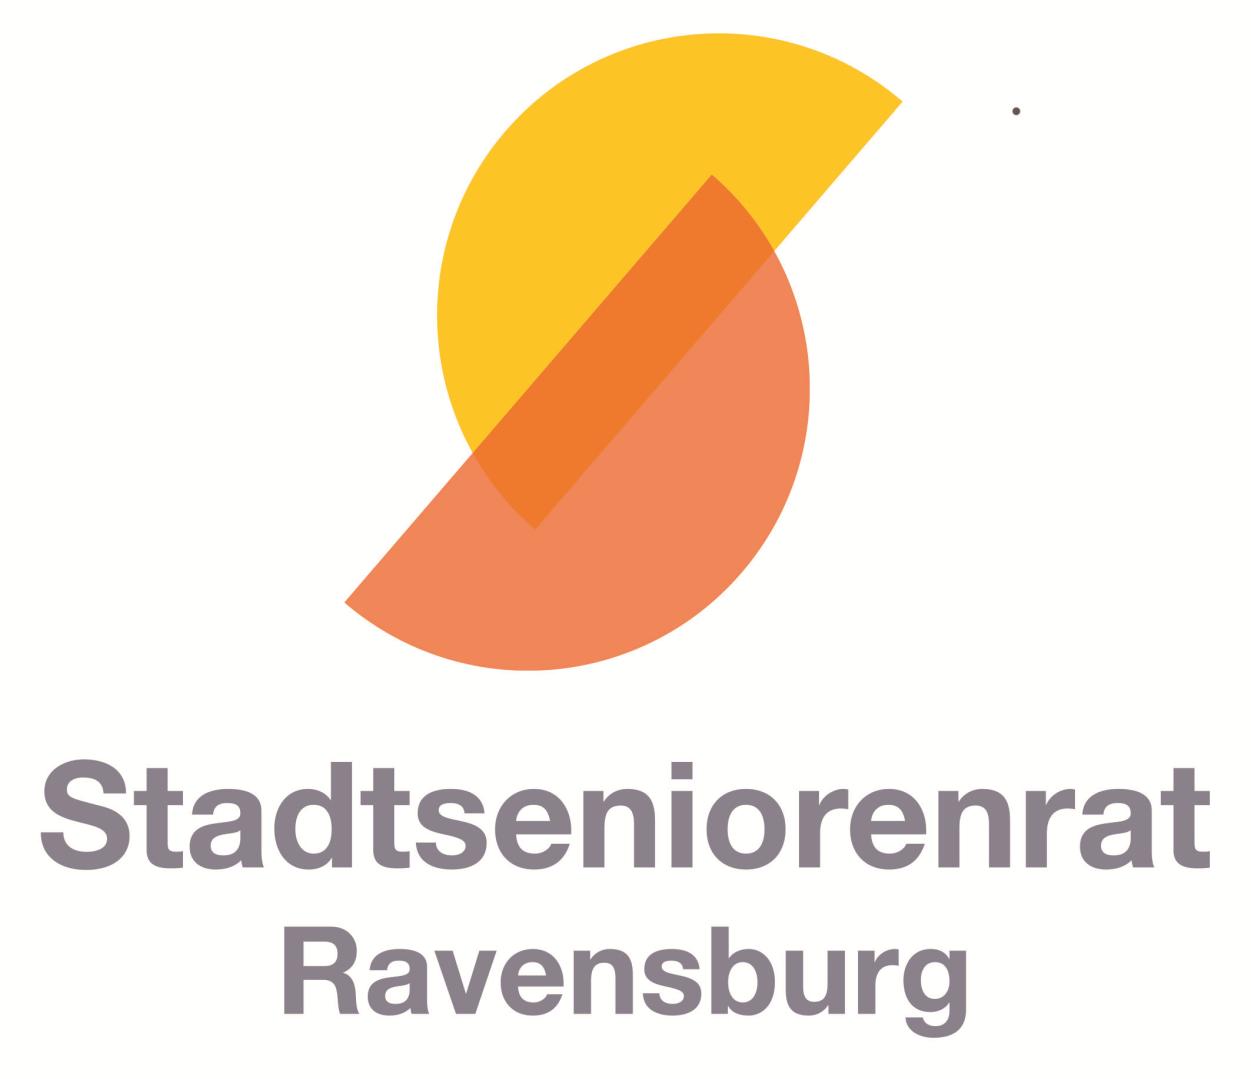 Diese Notfall- und Vorsorgemappe wurde durch eine Arbeitsgruppe des Stadtseniorenrats Ravensburg erarbeitet (Brigitte Restle, Egon Gmeiner, Martin Diez).